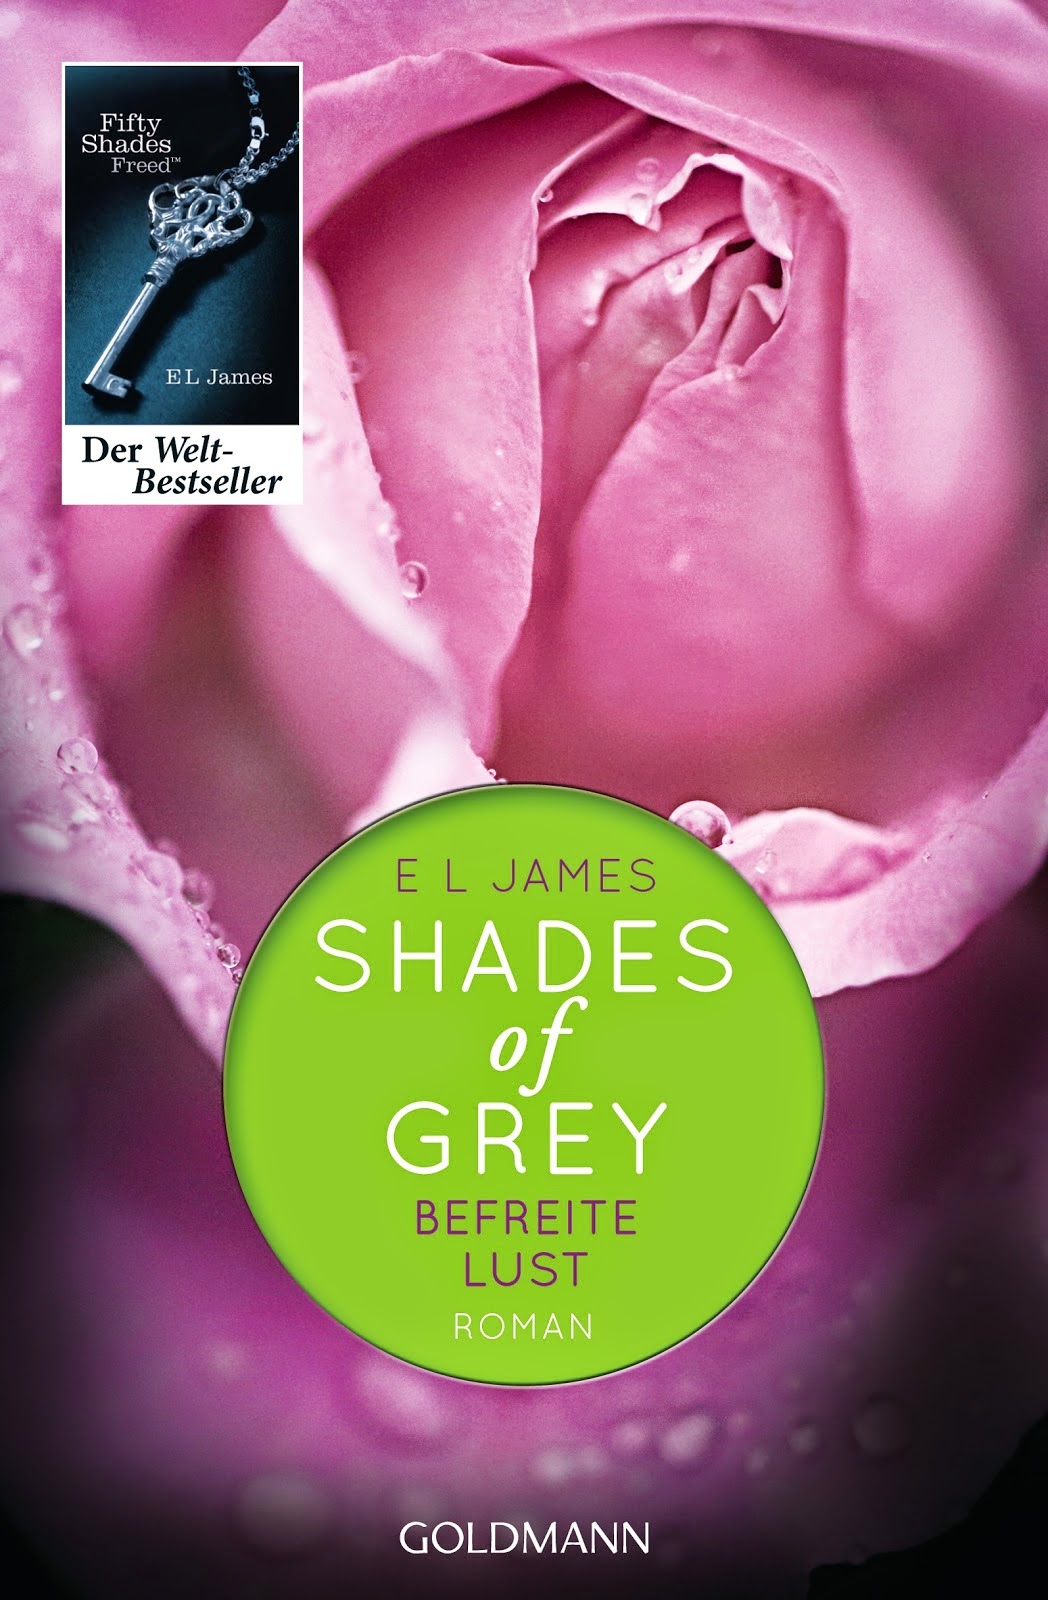 Buch: Shades of Grey 1-3 Trilogie - Zusammenfassung mit Trailer und Soundtrack - www.annitschkasblog.de